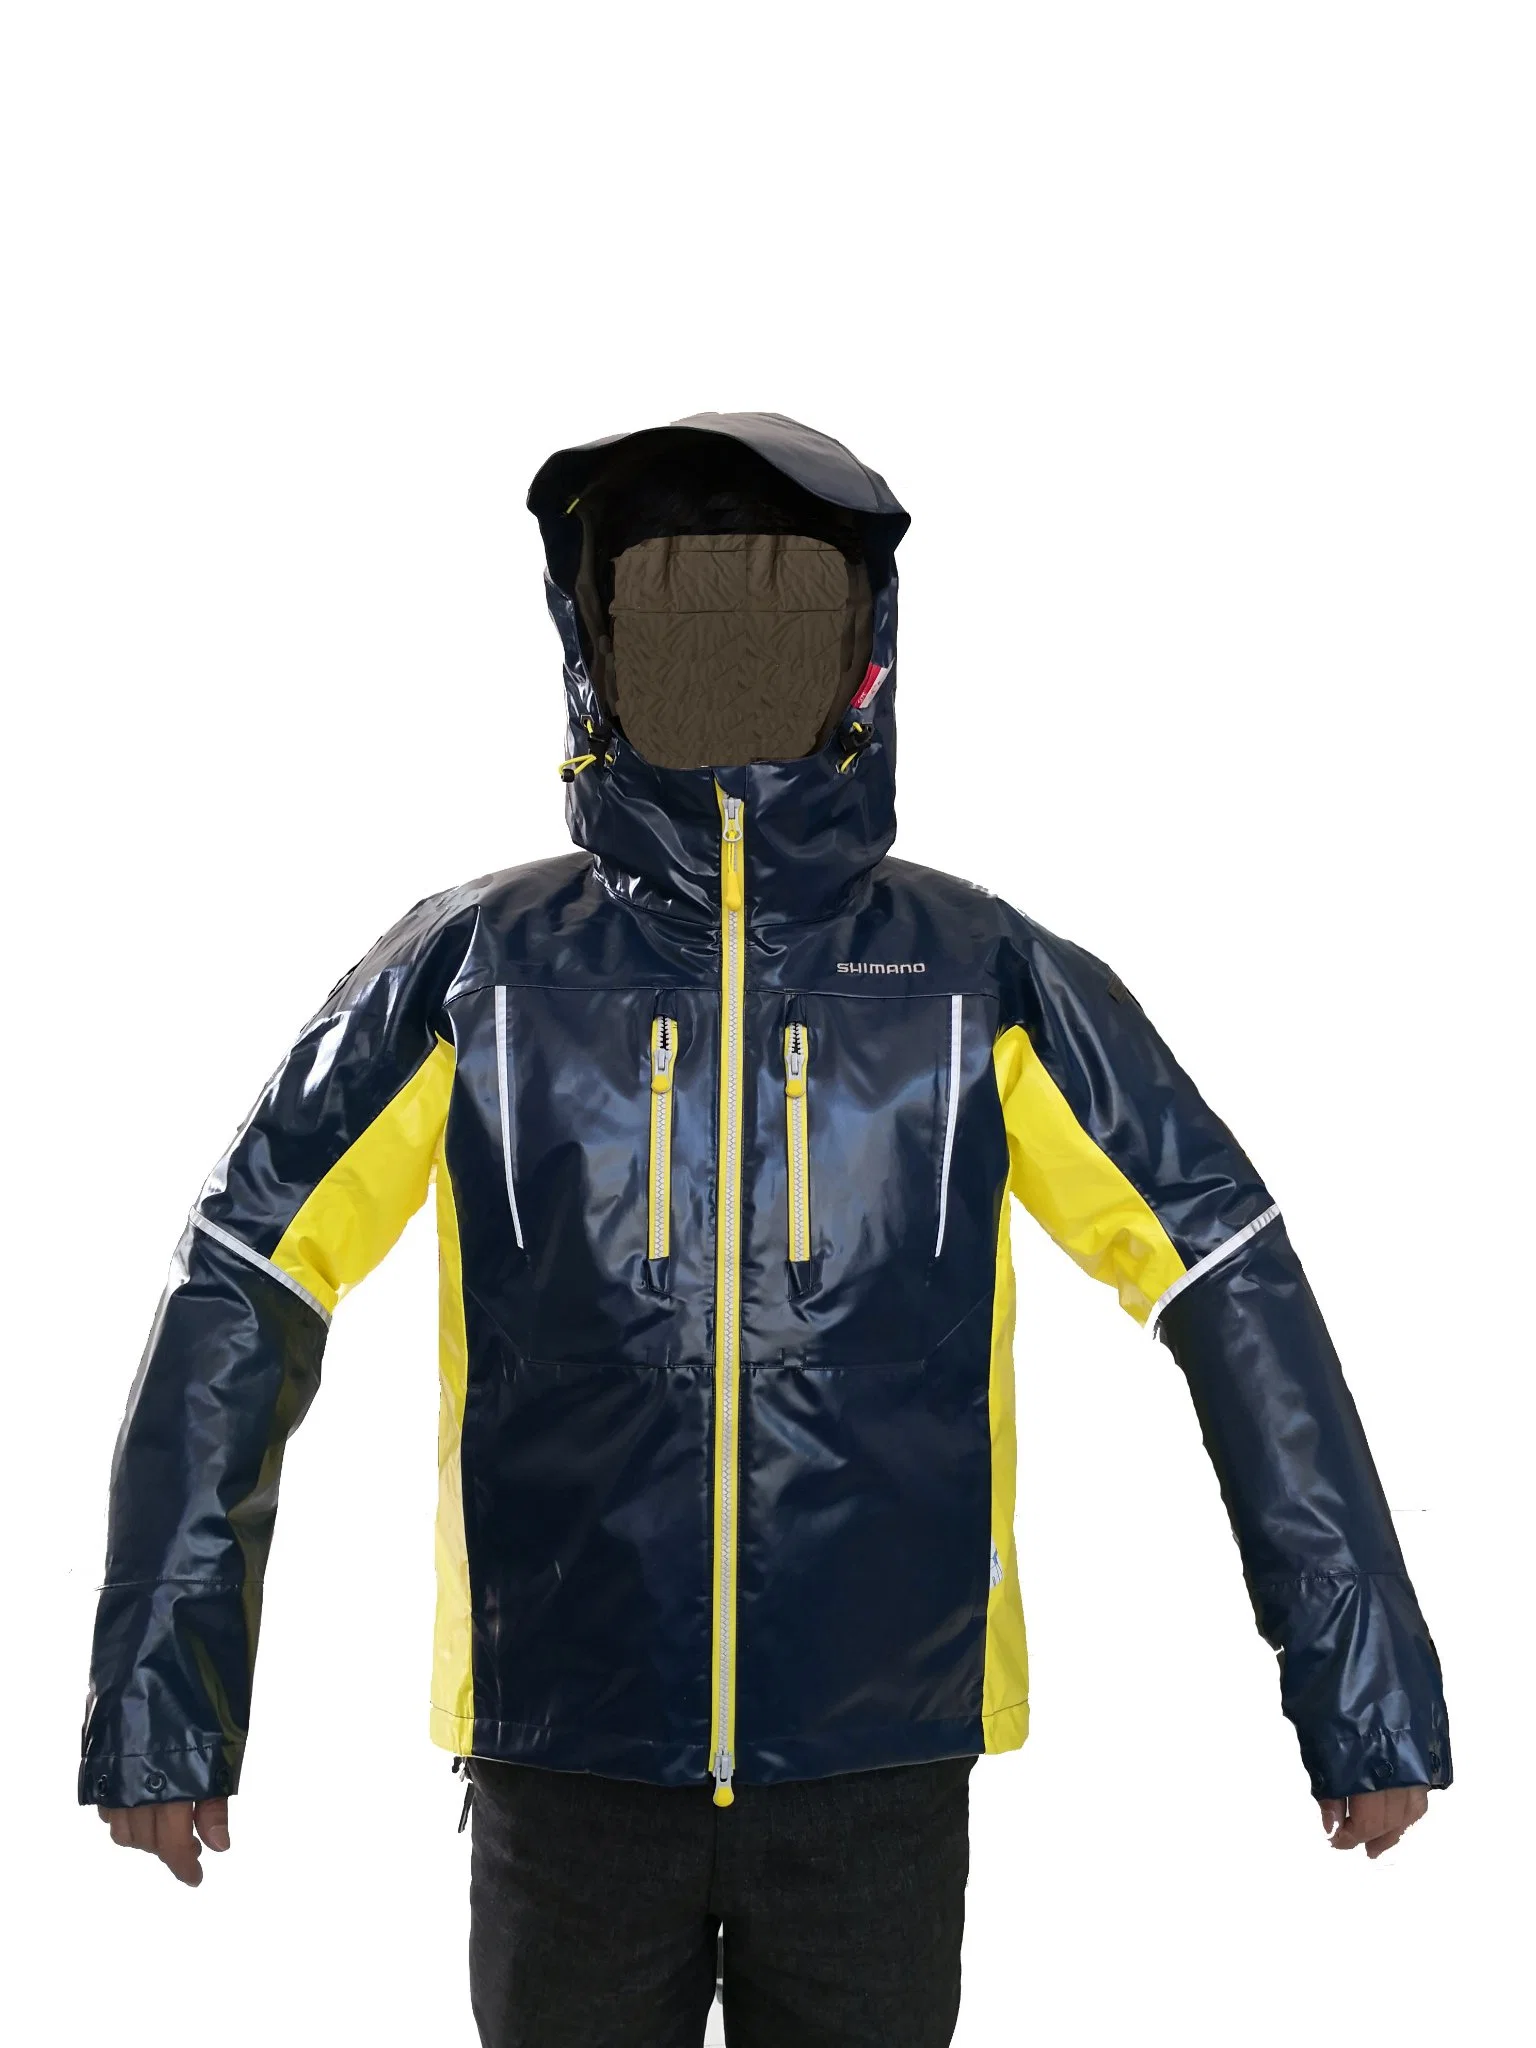 Motor Waterproof Jackets Fashion Sports Wear for Adults